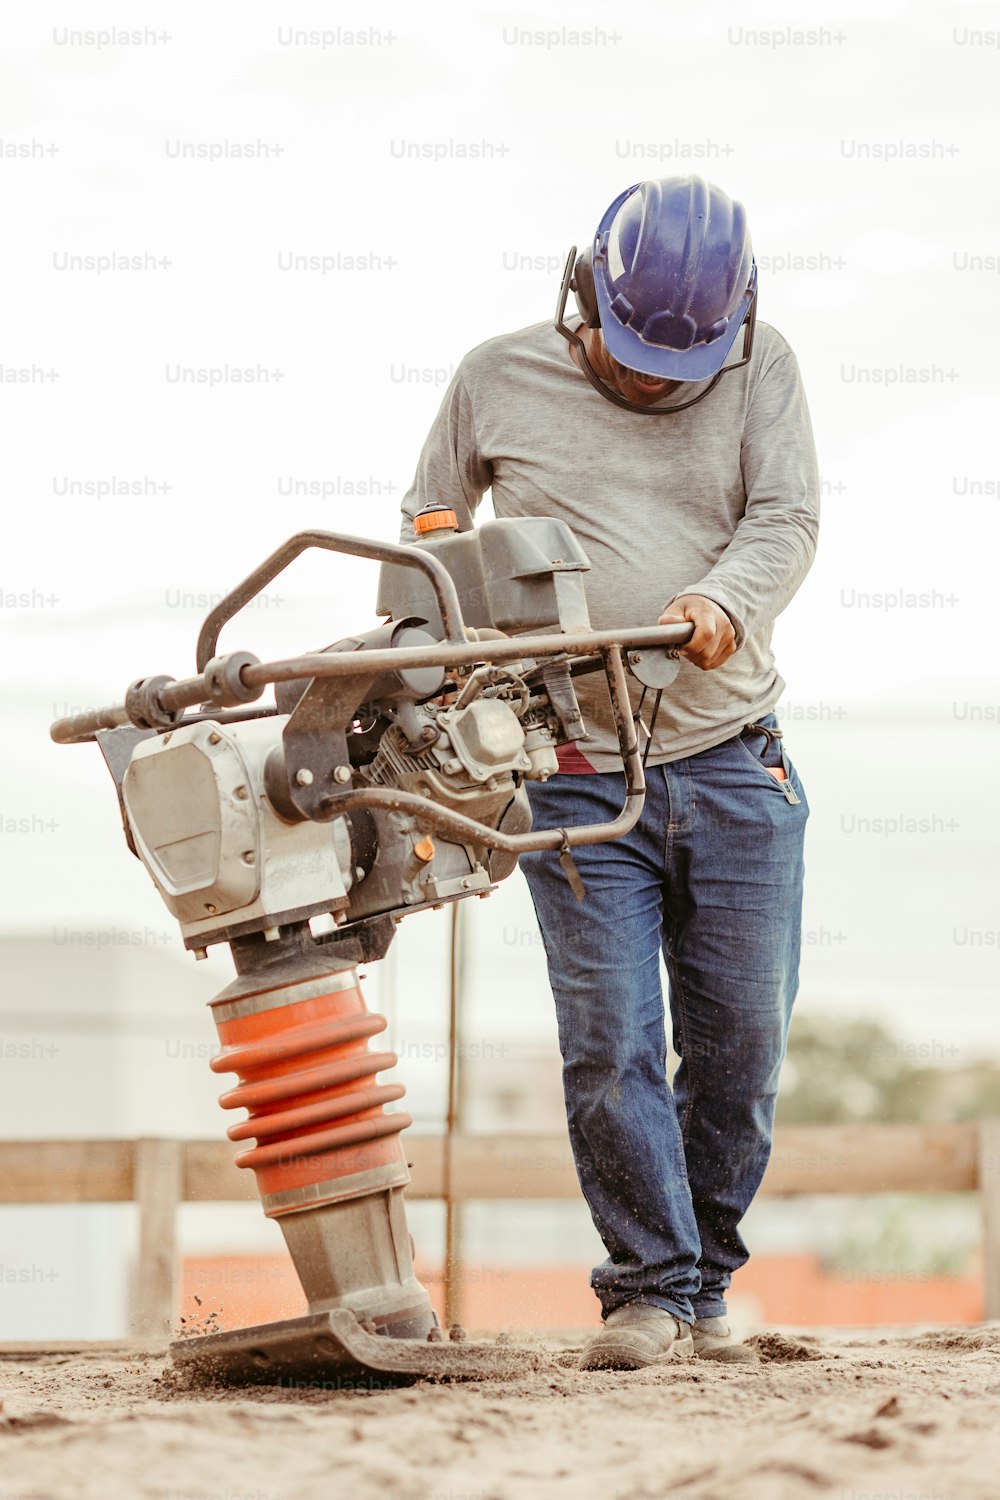 Un hombre con casco trabajando en una máquina